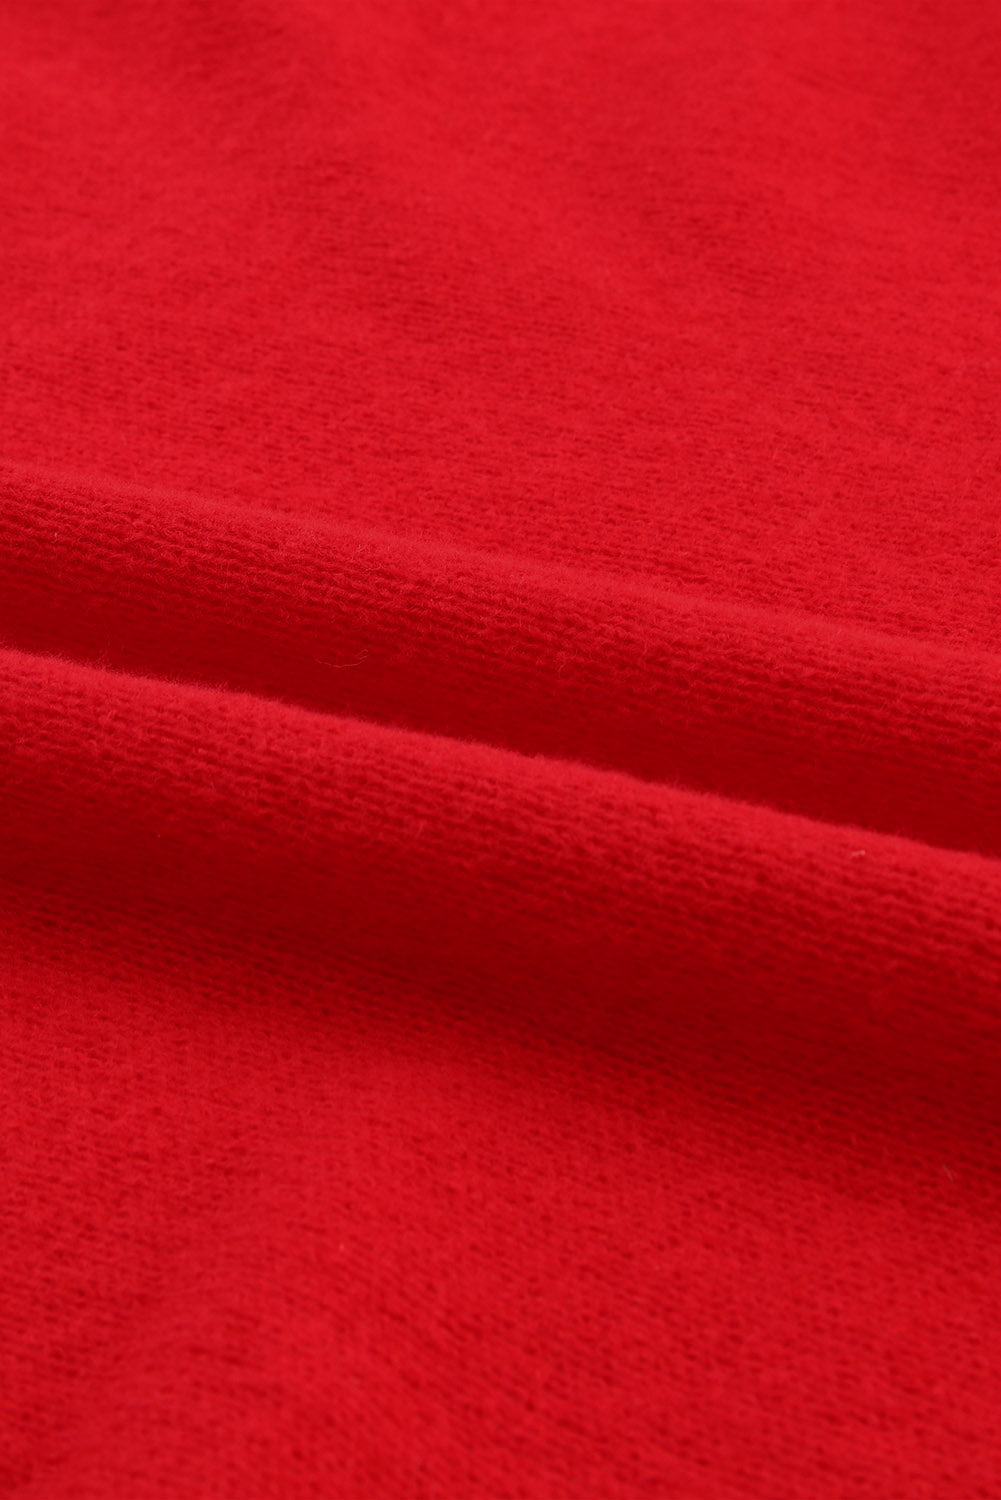 Dirkaški rdeč pulover z visokim ovratnikom z vezenim pismom LOVE